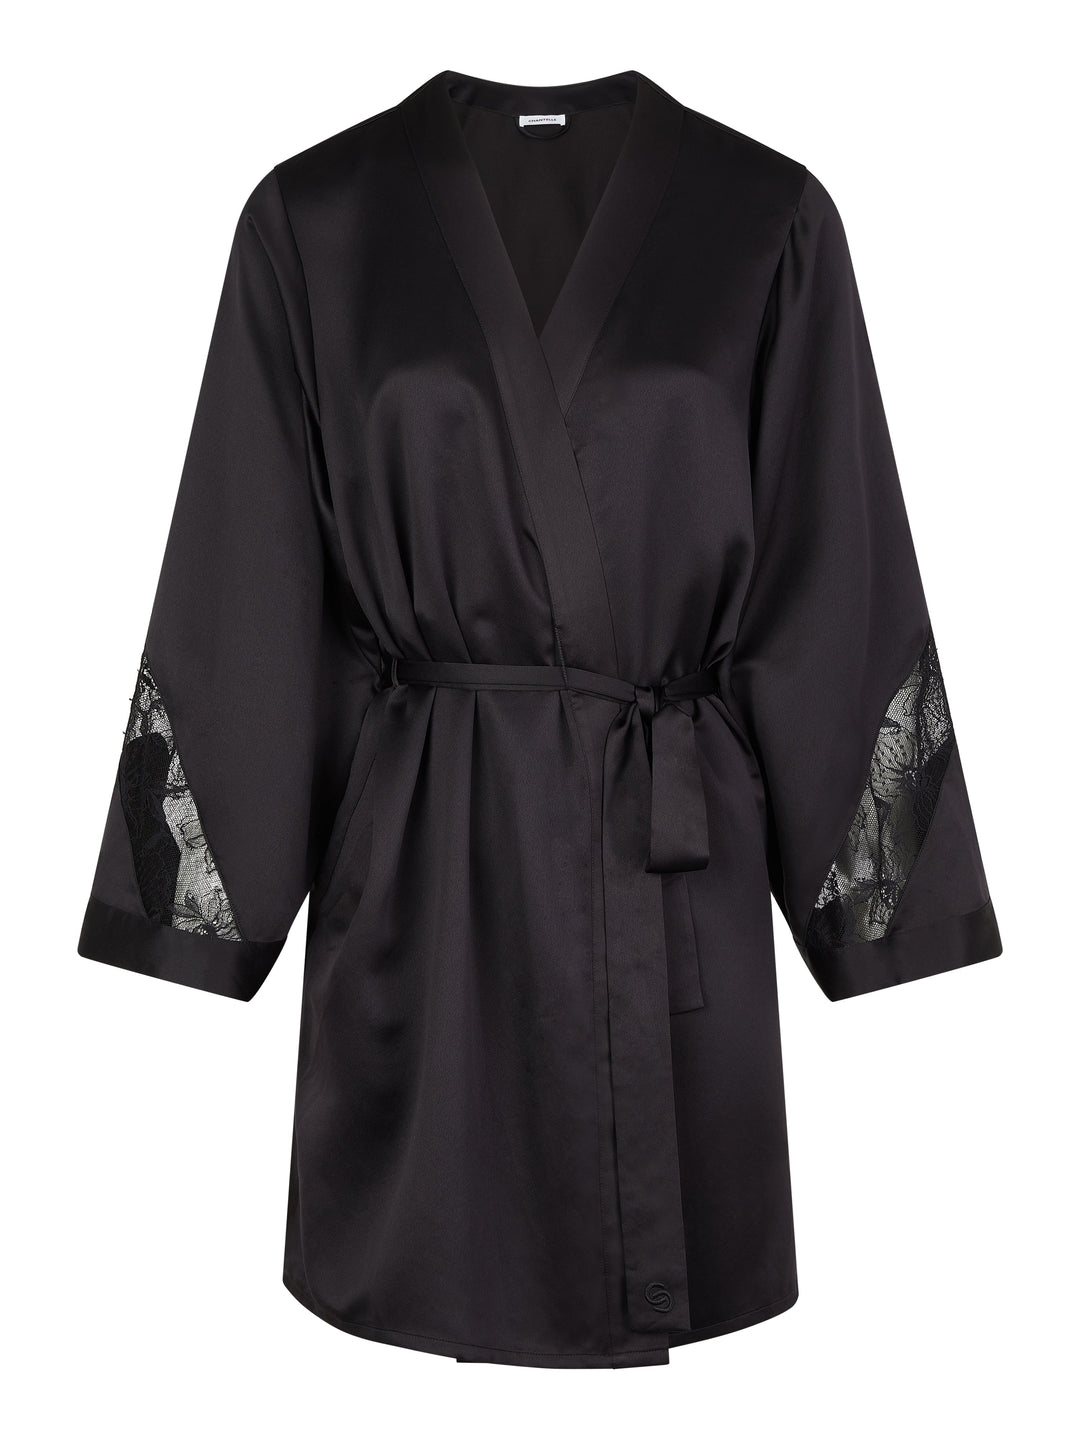 Chantelle - Robe déshabillée noire kimono orchidées Chantelle